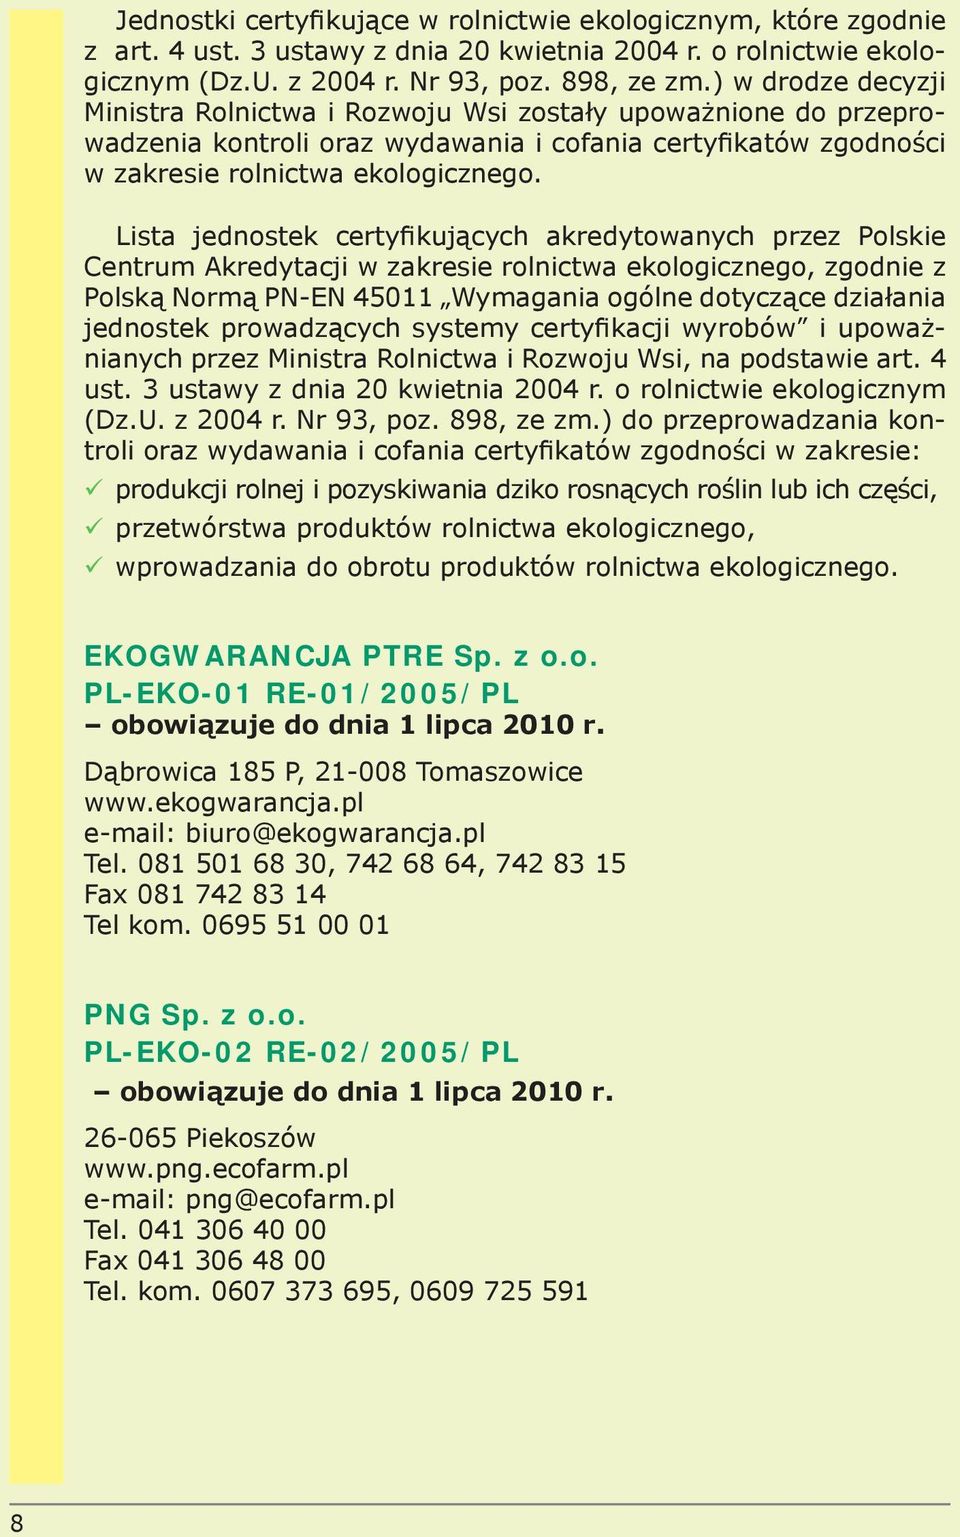 Lista jednostek certyfikujących akredytowanych przez Polskie Centrum Akredytacji w zakresie rolnictwa ekologicznego, zgodnie z Polską Normą PN-EN 45011 Wymagania ogólne dotyczące działania jednostek